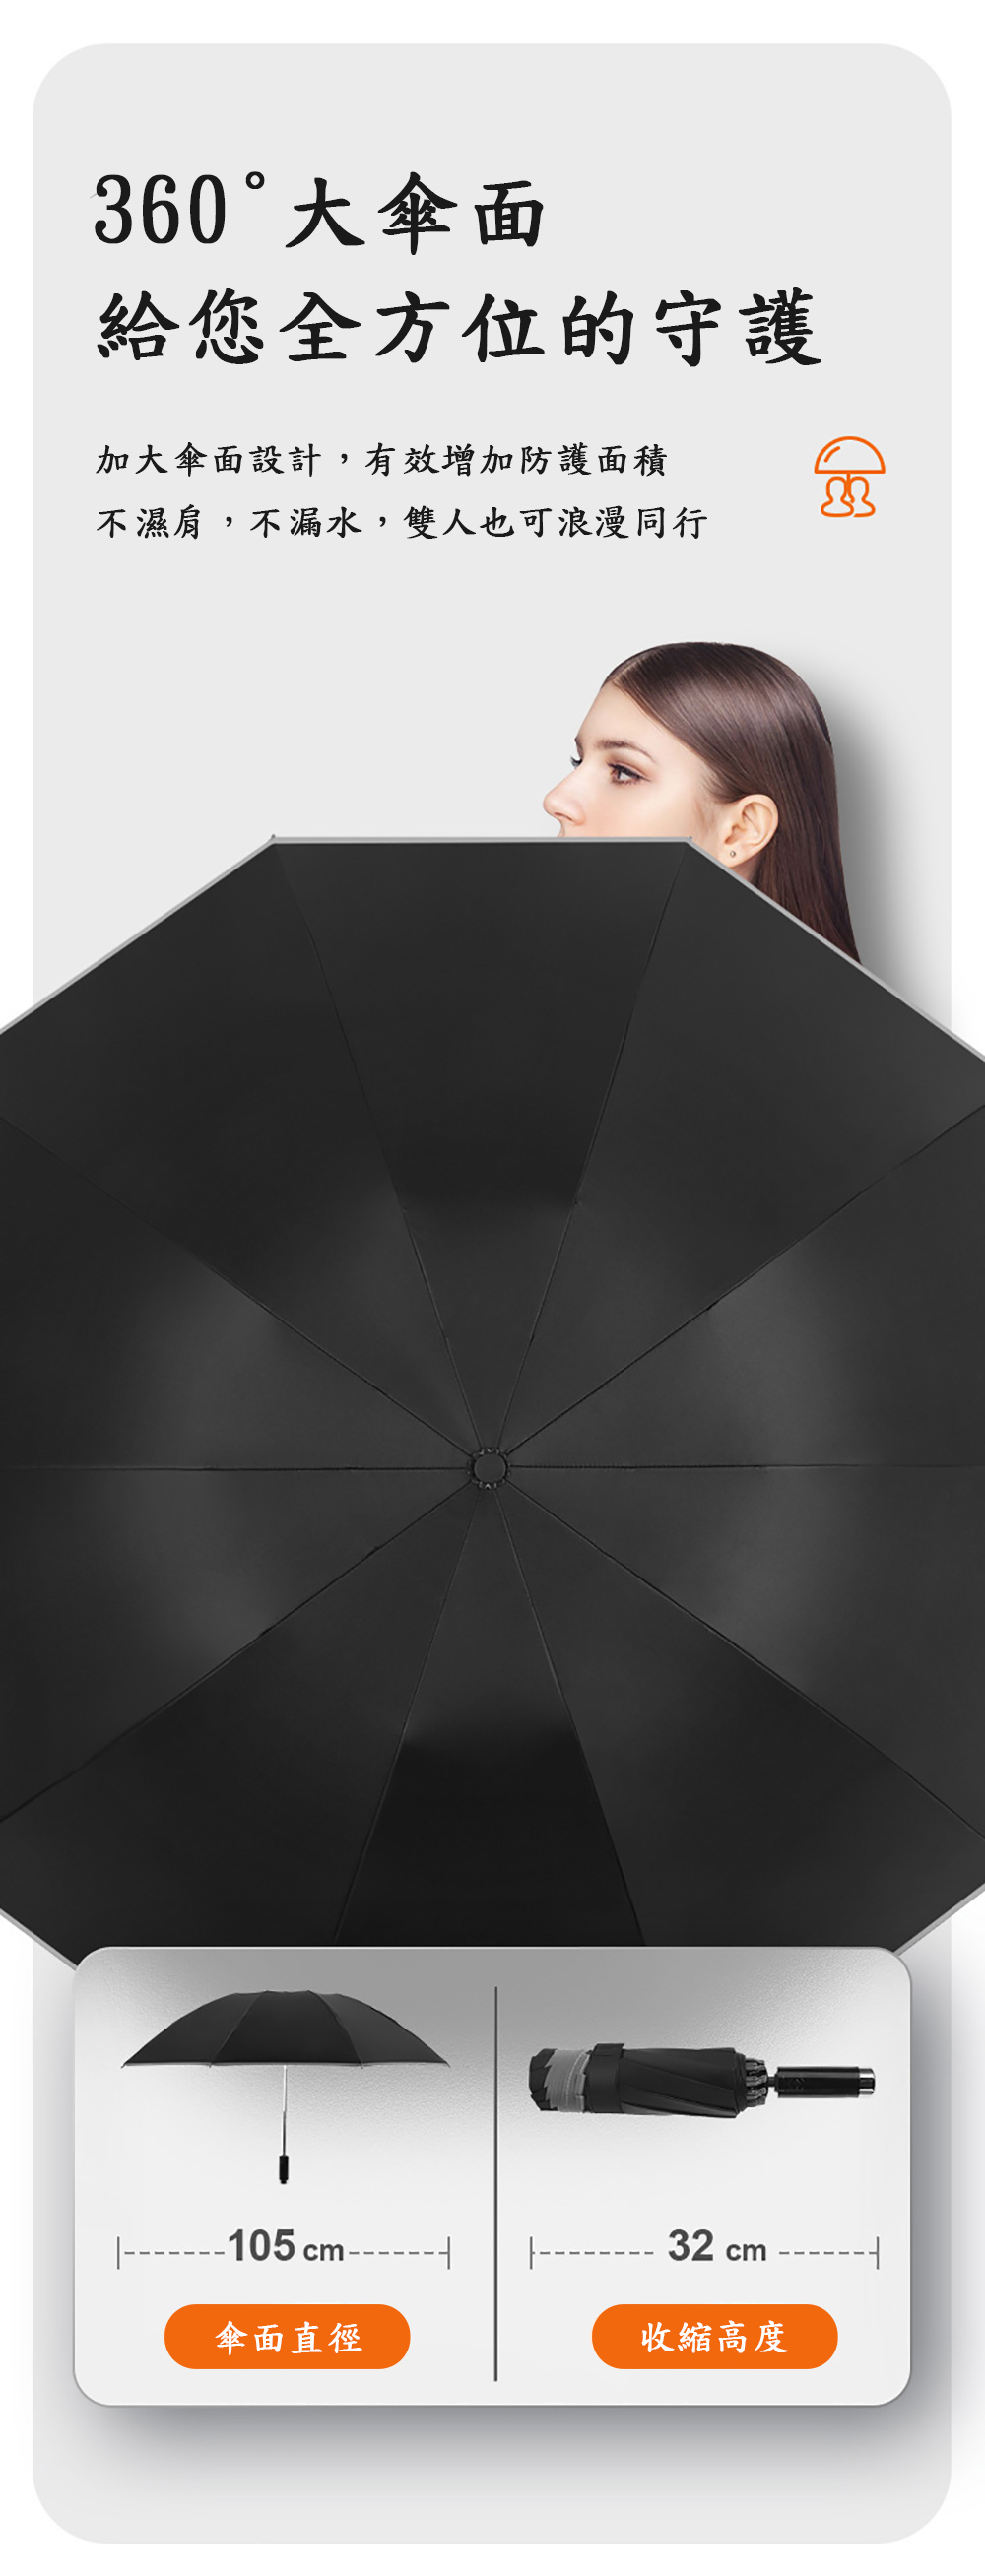 360°大傘面給您全方位的守護加大傘面設計,有效增加防護面積不濕肩,不漏水,雙人也可浪漫同行105 cm--------- 32 cm傘面直徑收縮高度